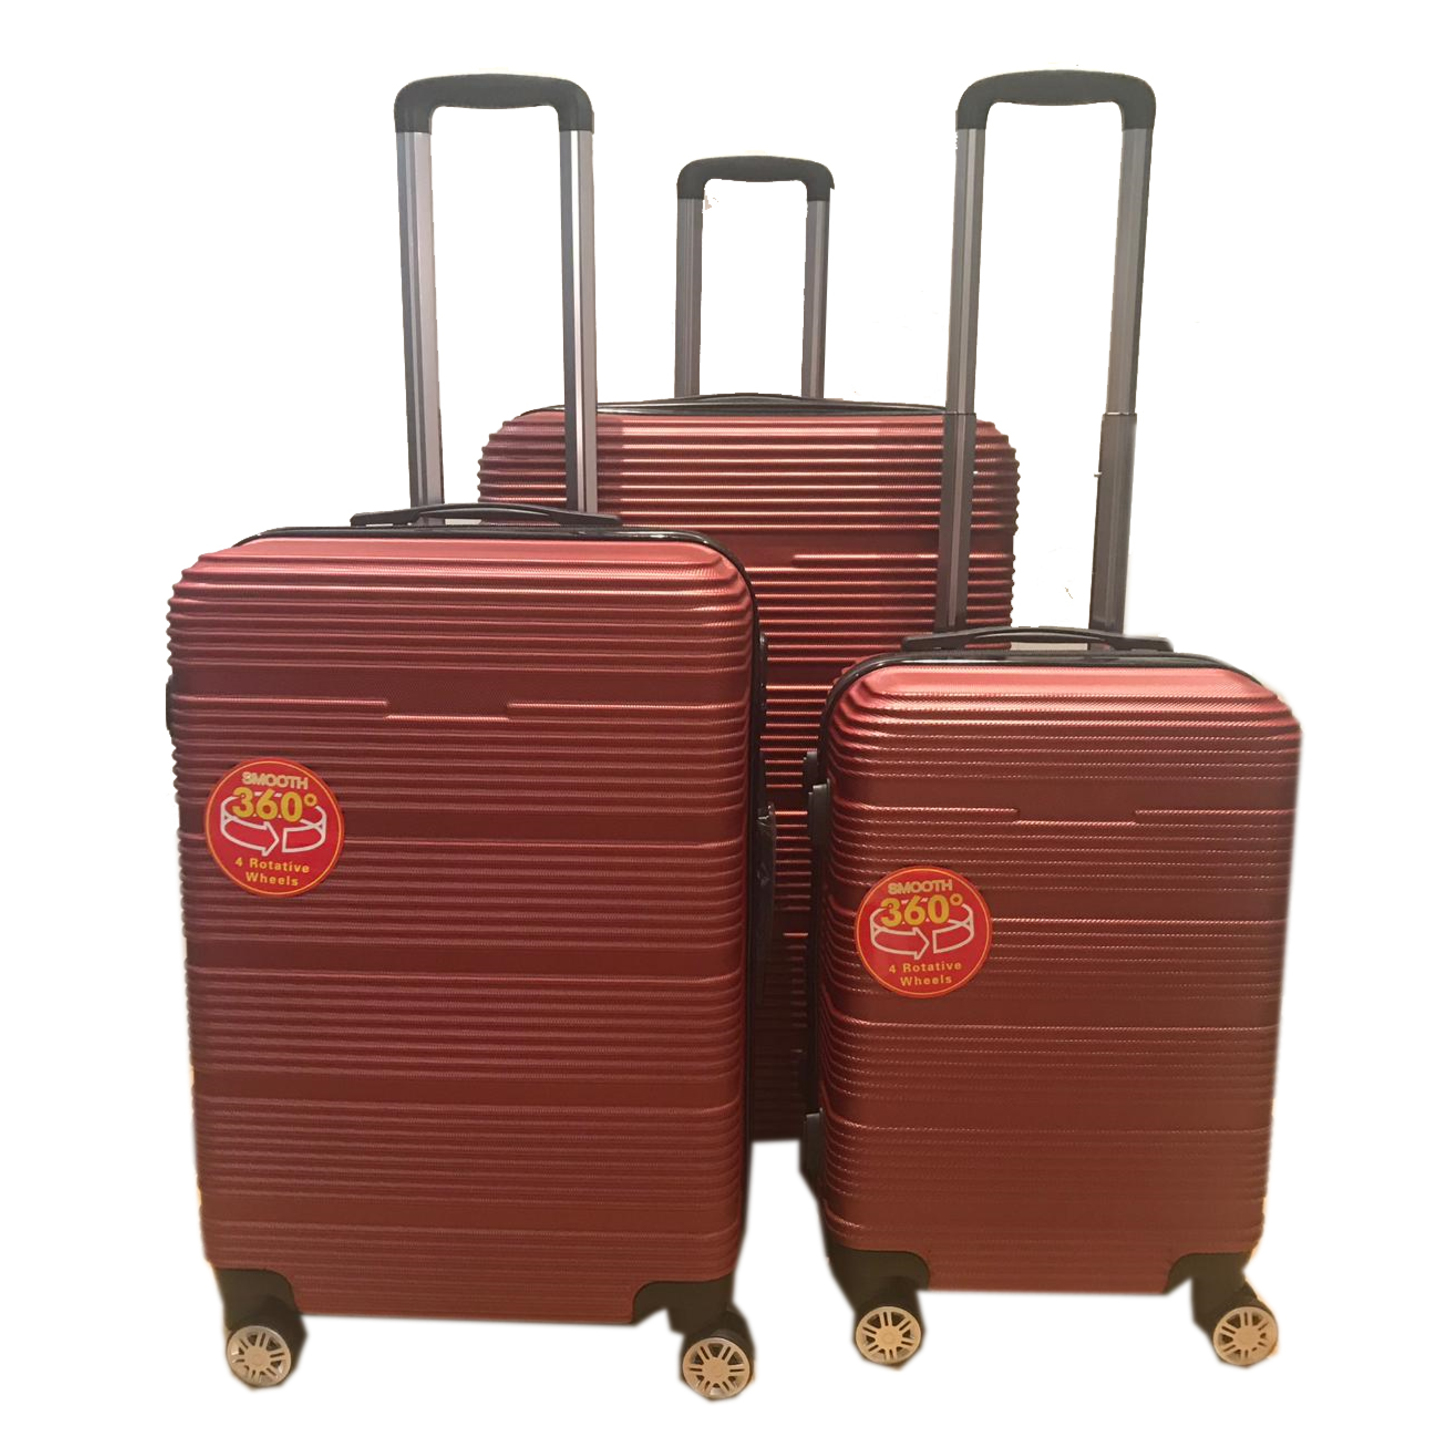 SGT-02 Elegant Hard Box luggage - Red  20 inch, 24 inch, 28 inch